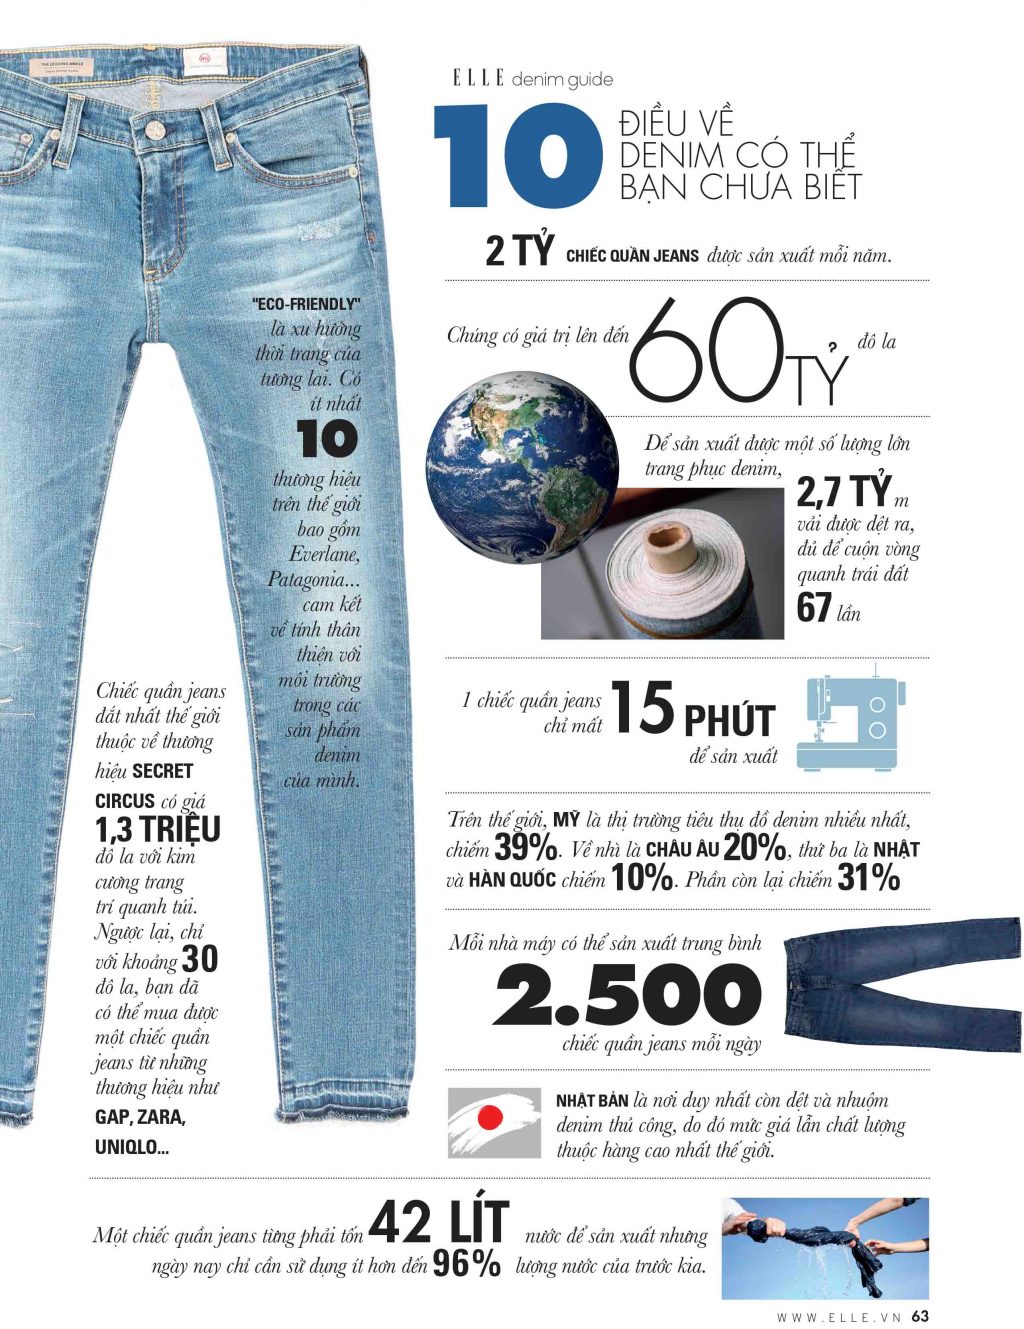 Thân thiện với môi trường sẽ giúp sản xuất quần jean đồng thời bảo vệ môi trường.